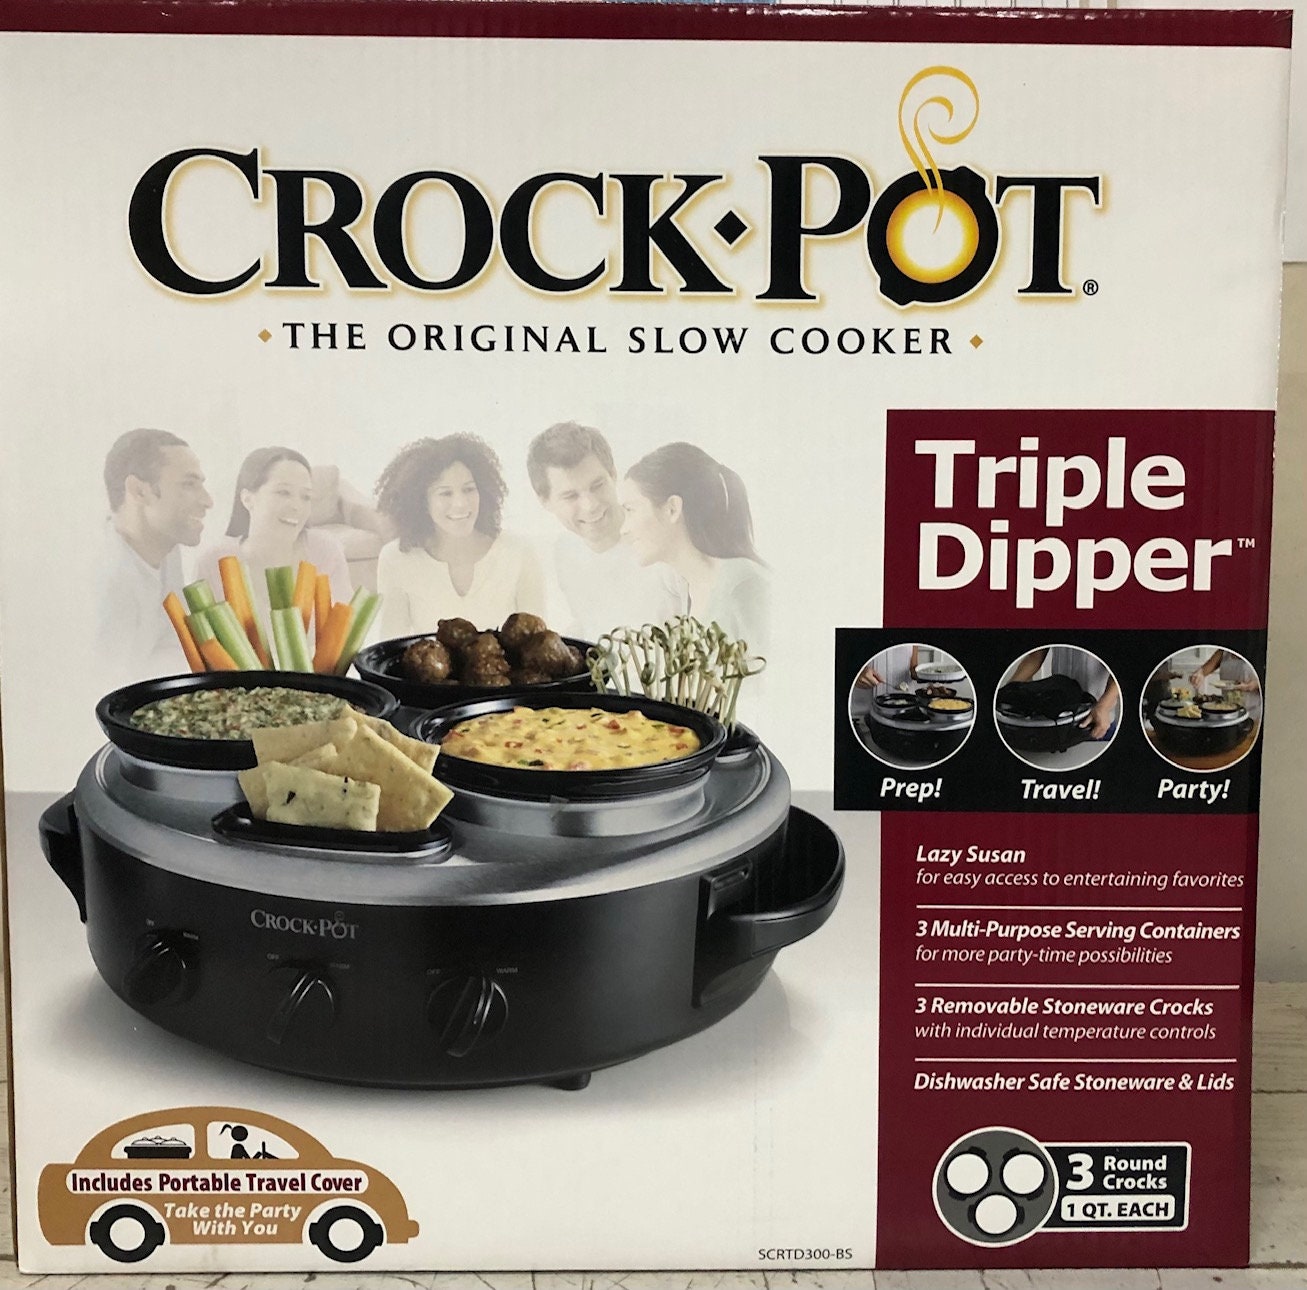 Crockpot Trio 16oz Little Triple Dipper Slow Cooker SCRMTD307-DK